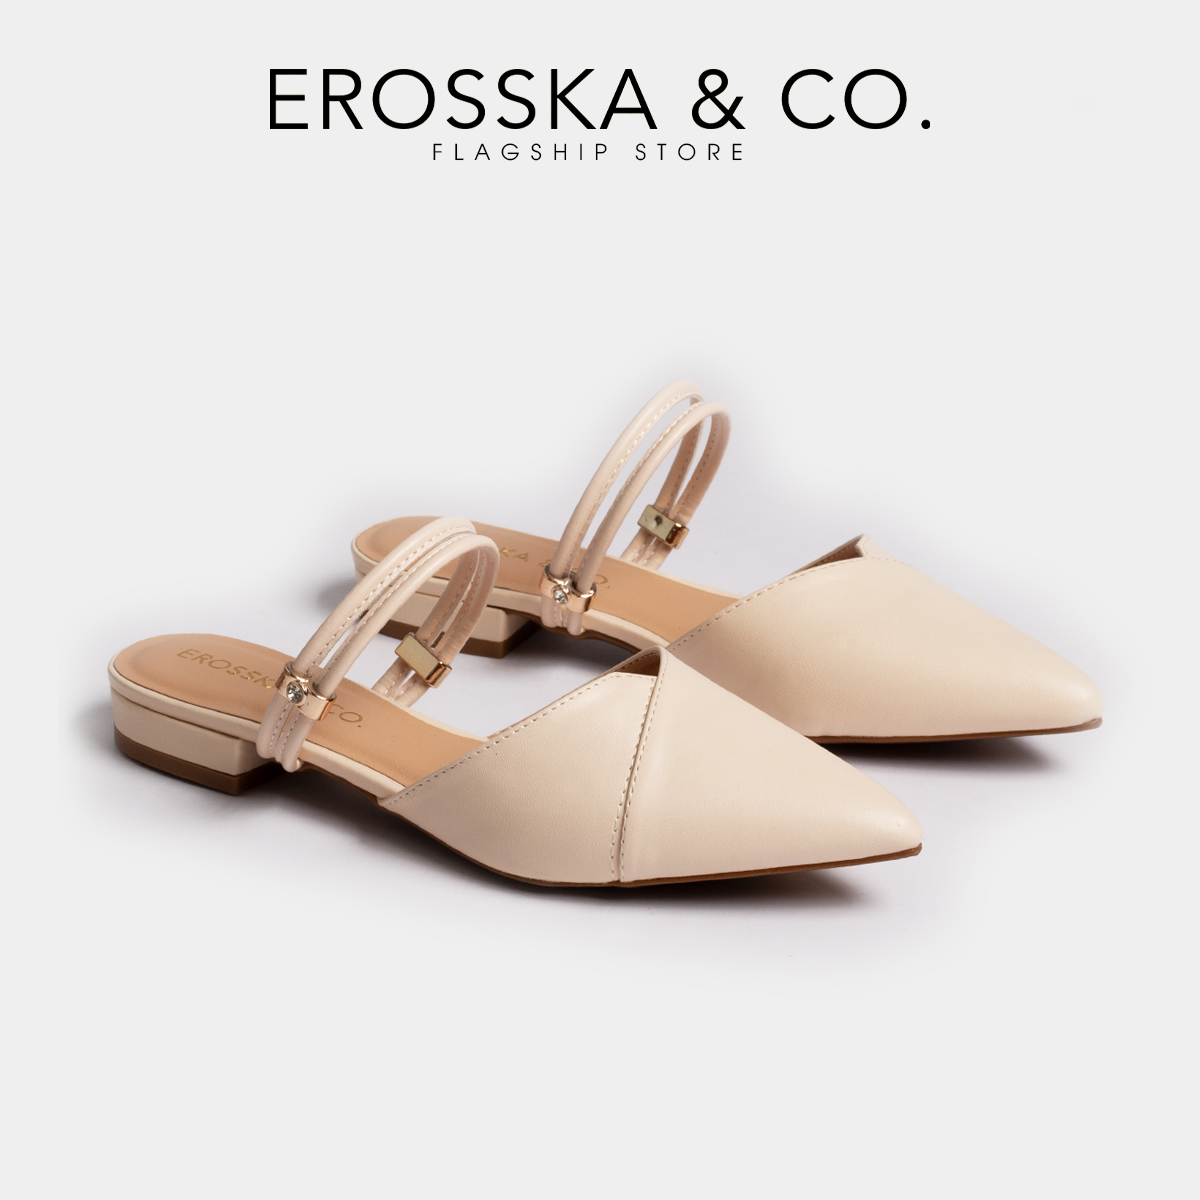 Giày Bít Mũi Phối Dây Thời Trang Erosska EL004 (Màu nude)